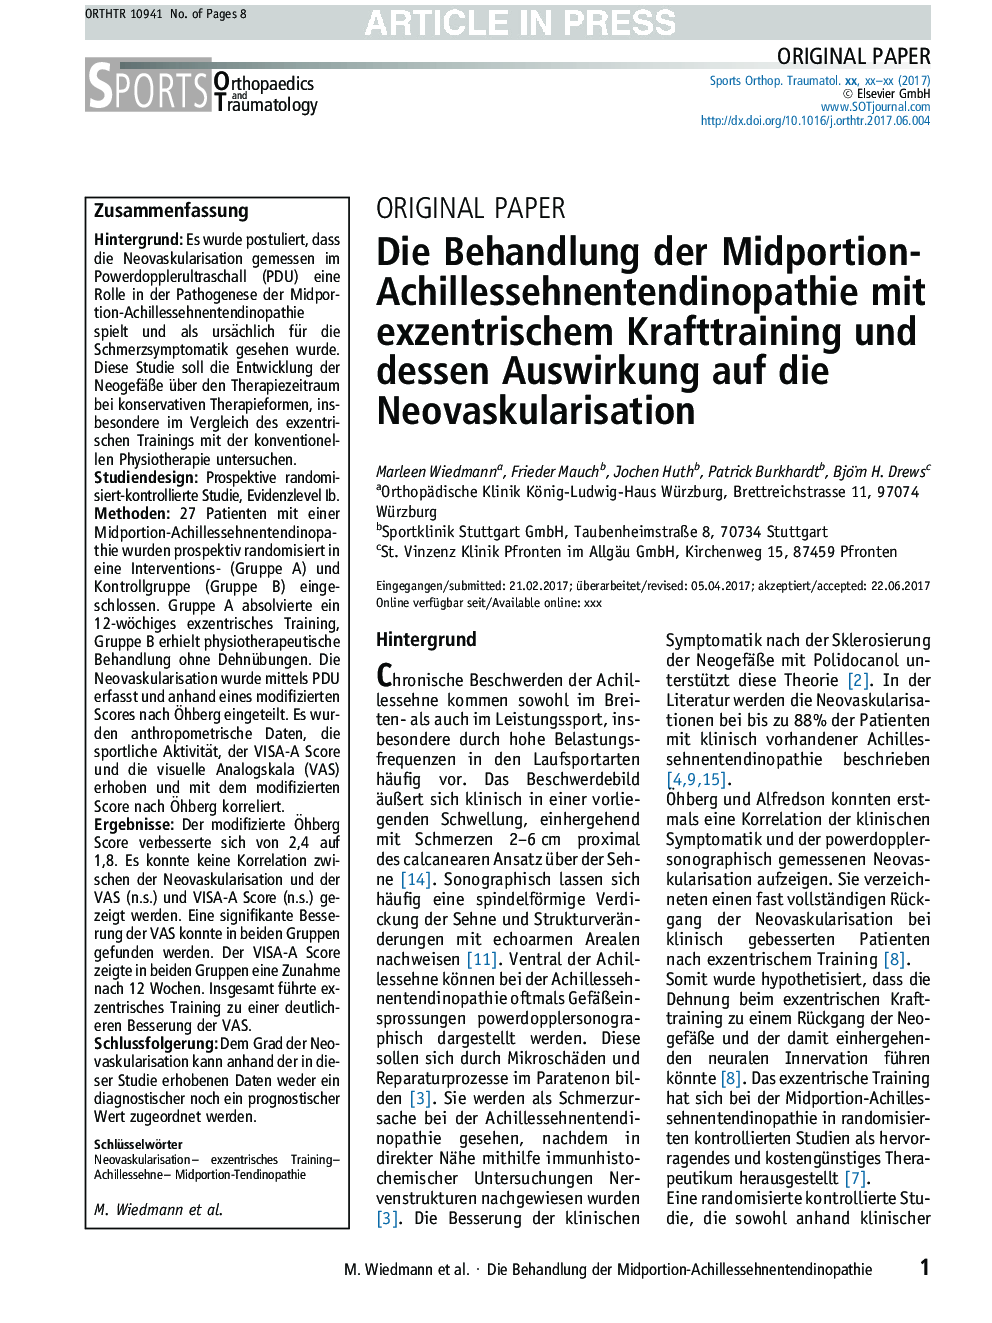 Die Behandlung der Midportion-Achillessehnentendinopathie mit exzentrischem Krafttraining und dessen Auswirkung auf die Neovaskularisation